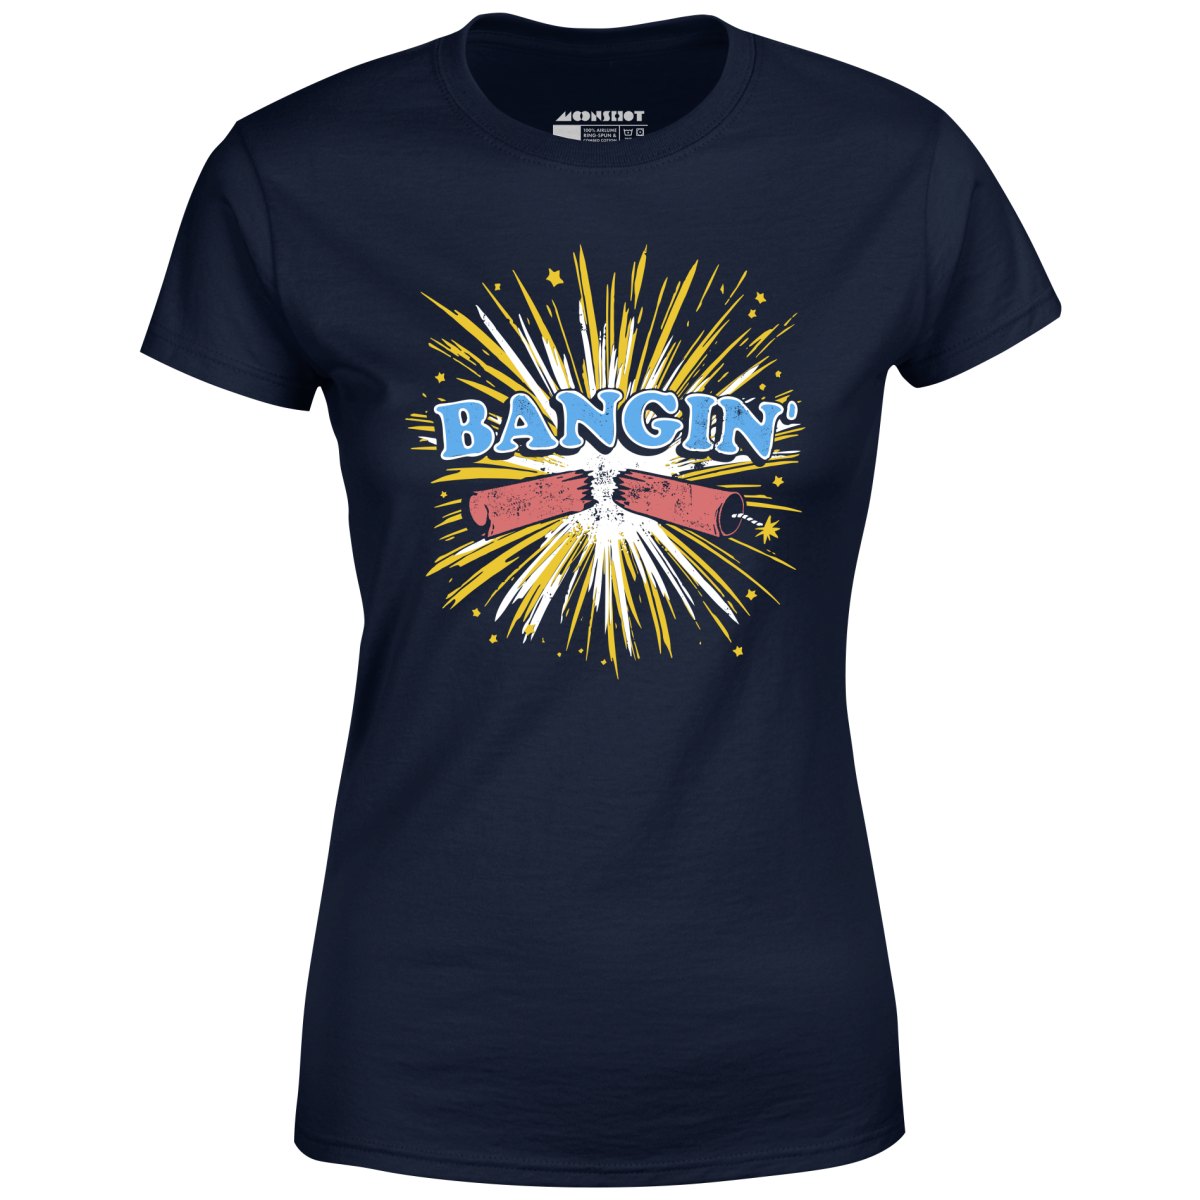 Bangin' - Women's T-Shirt